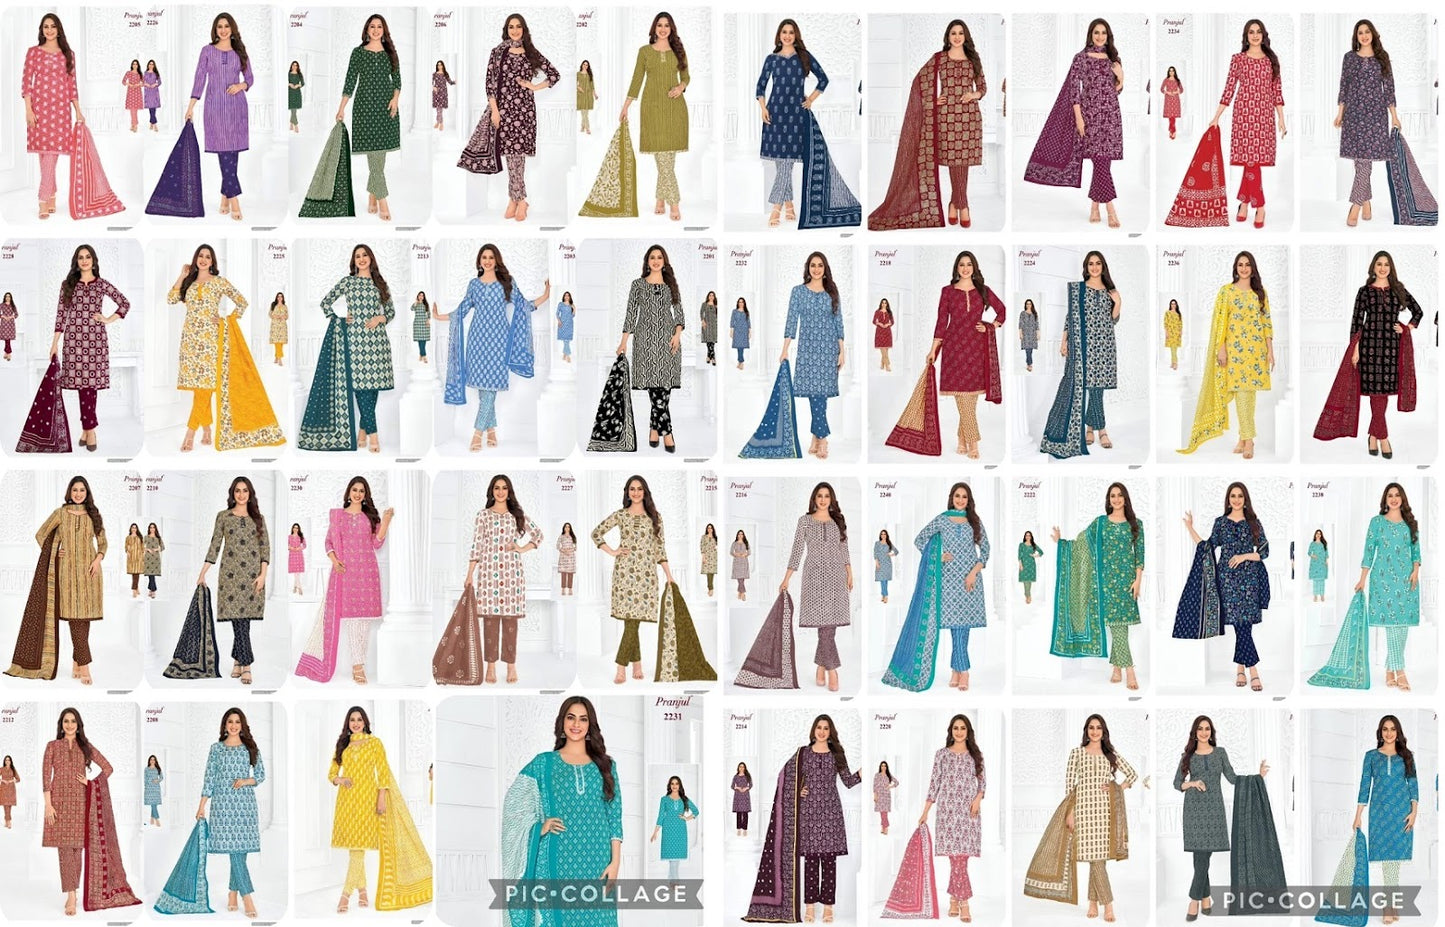 Priyanka Vol 22 Pranjul Cotton Dress Material